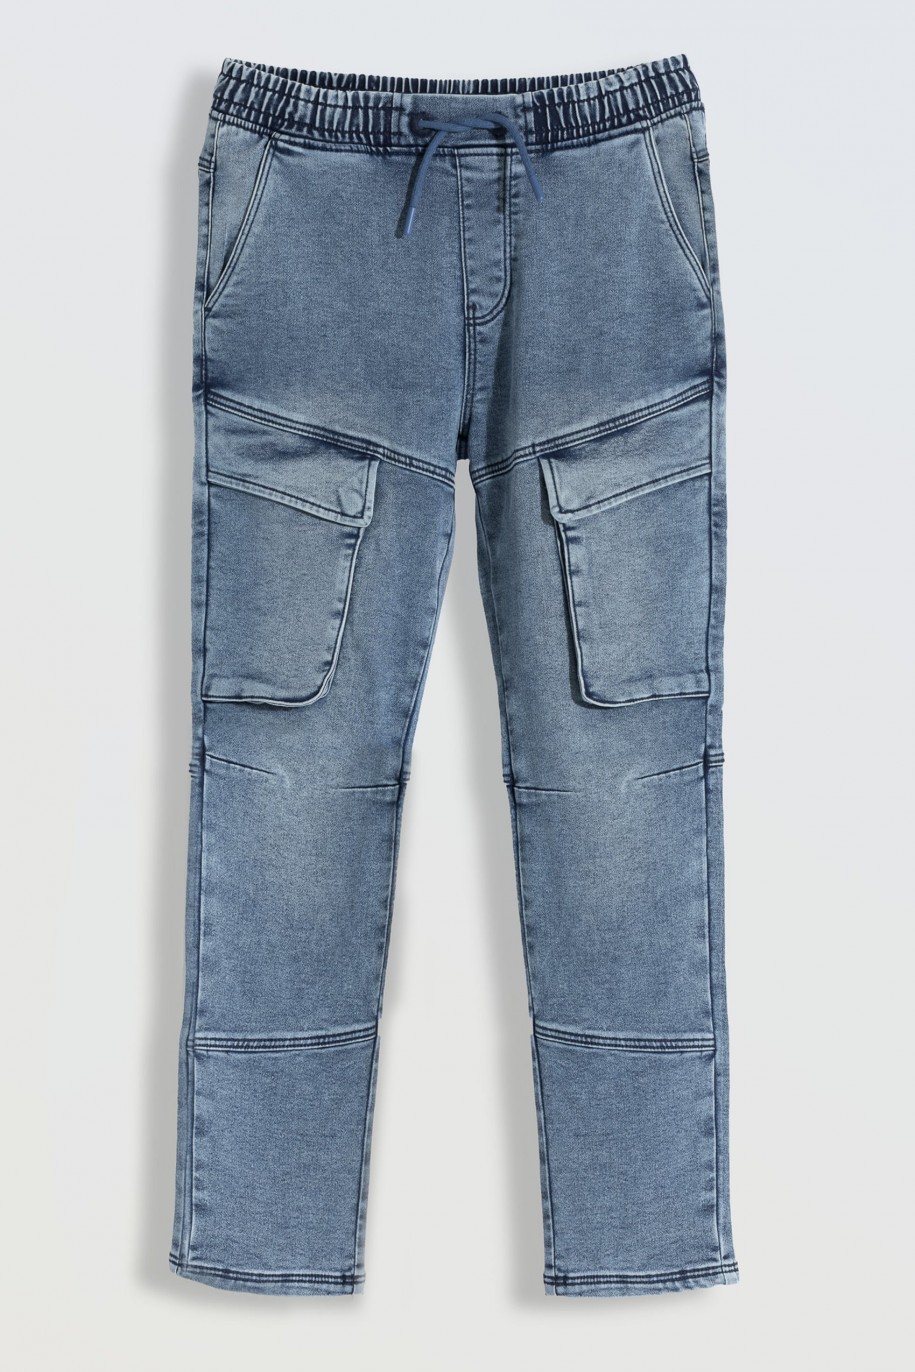 Niebieskie marmurkowe jeansy typu joggery z kieszeniami - 46251